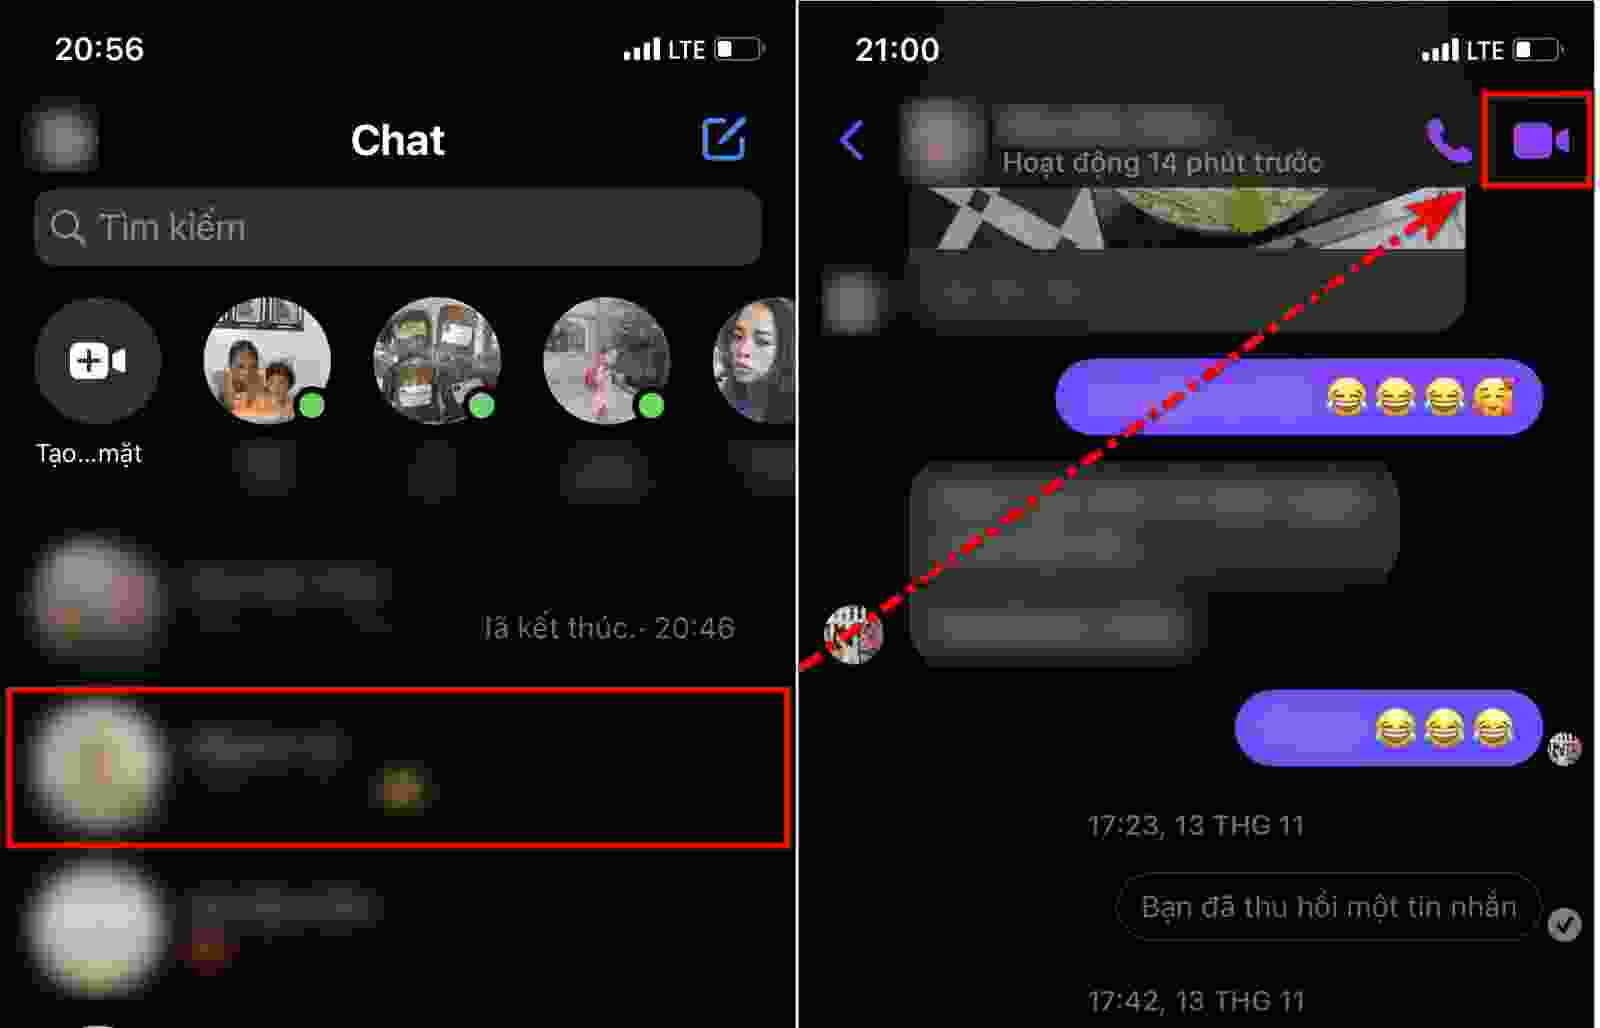 Bạn đang gặp khó khăn khi thu nhỏ màn hình trong cuộc gọi video trên Messenger? Đừng lo lắng nữa! Fptshop.com.vn sẽ giúp bạn giải quyết vấn đề đó một cách nhanh chóng và hiệu quả nhất. Hãy cùng khám phá mẹo hay để tận dụng tính năng này trên iPhone.